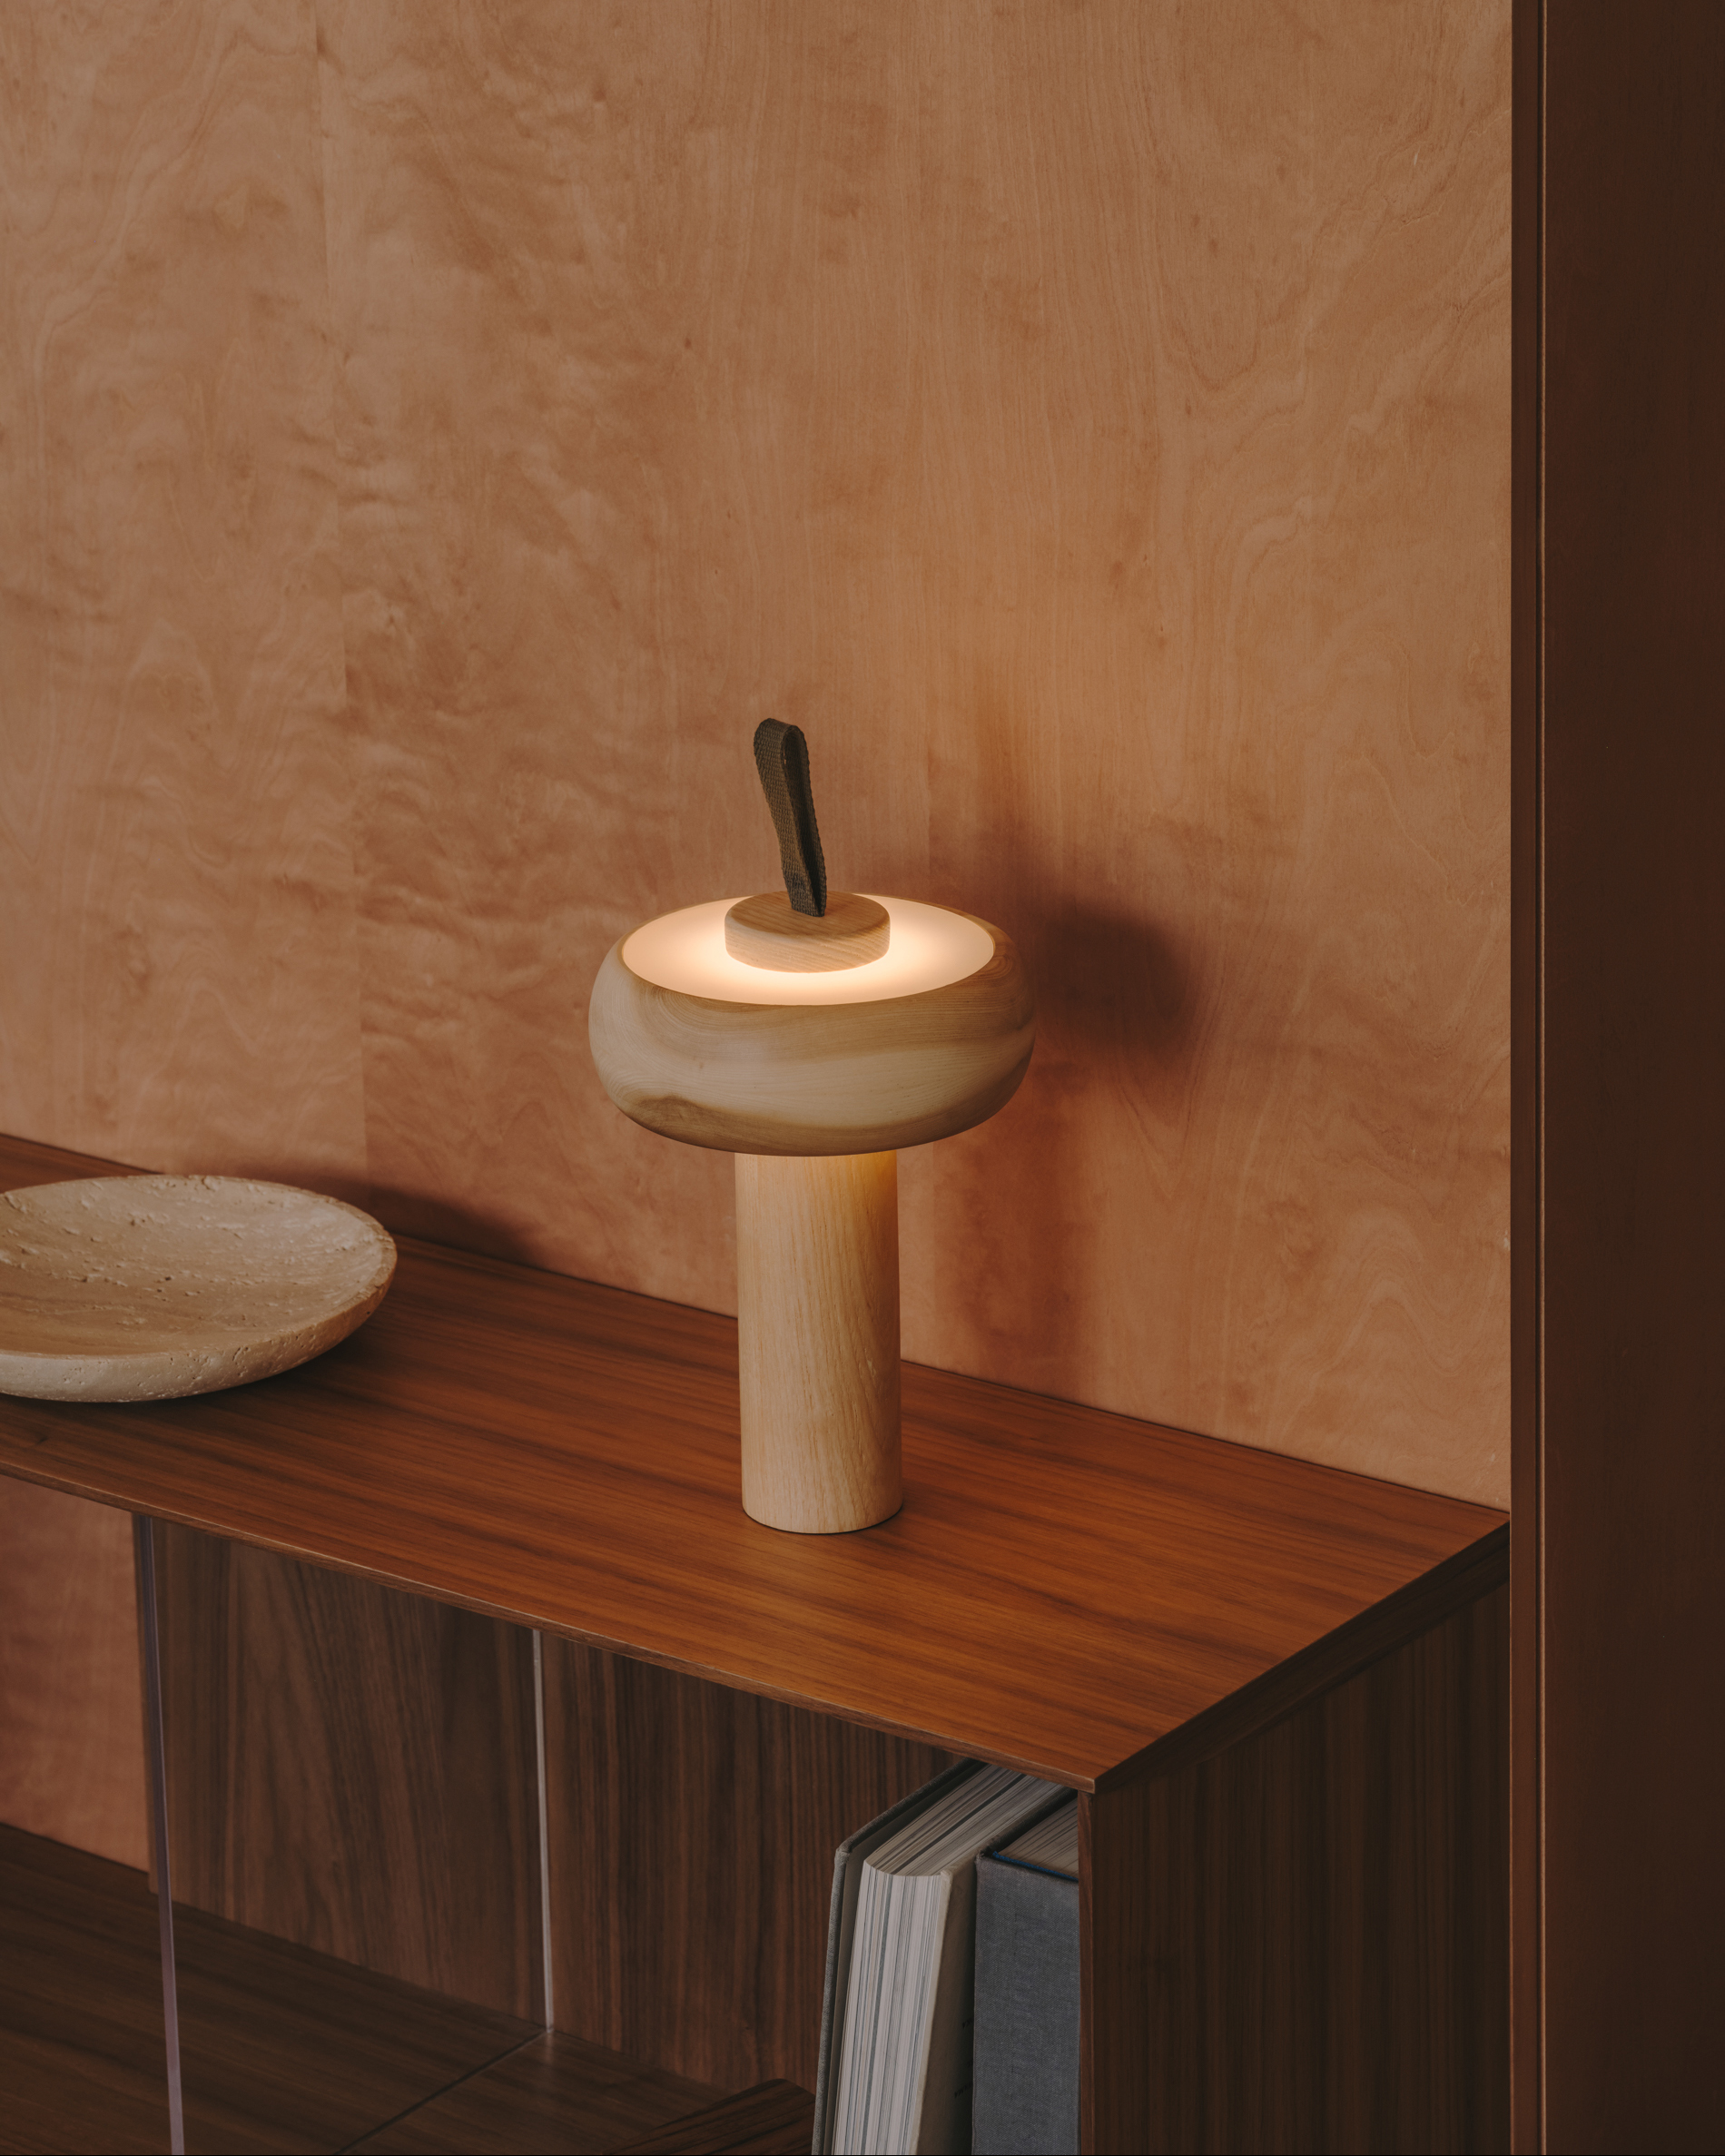 Lampe de table portable Luba en bois de frêne et poignée en coton vert